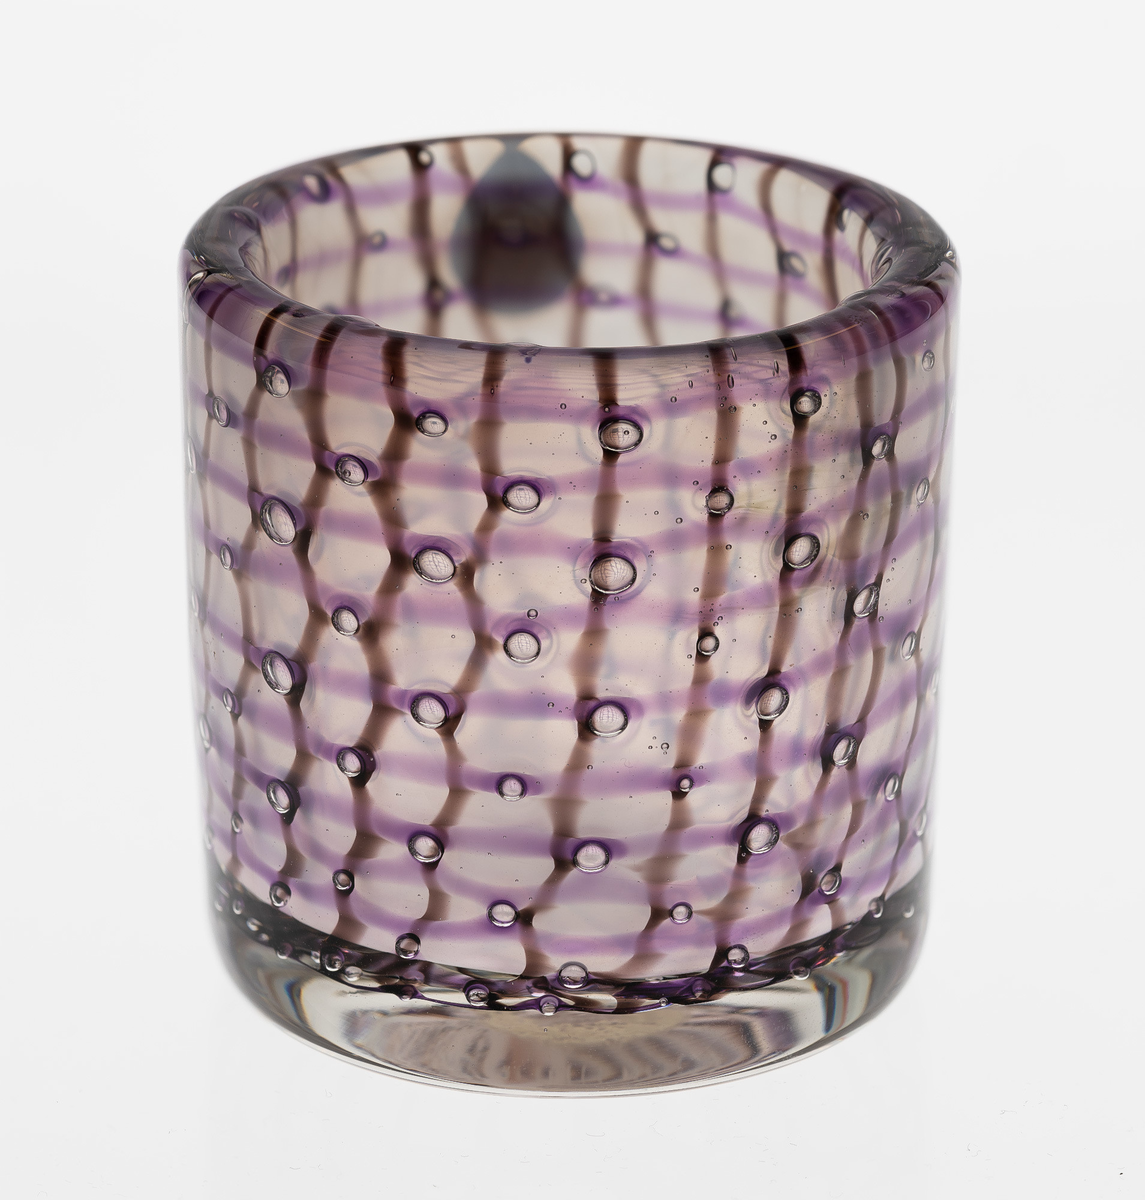 Sylindrisk vase i polykromt gjennomskinnelig glass. Tykke vegger i klart glass, dekorert med lilla horisontale og brun vertikale striper samt luftbobler.